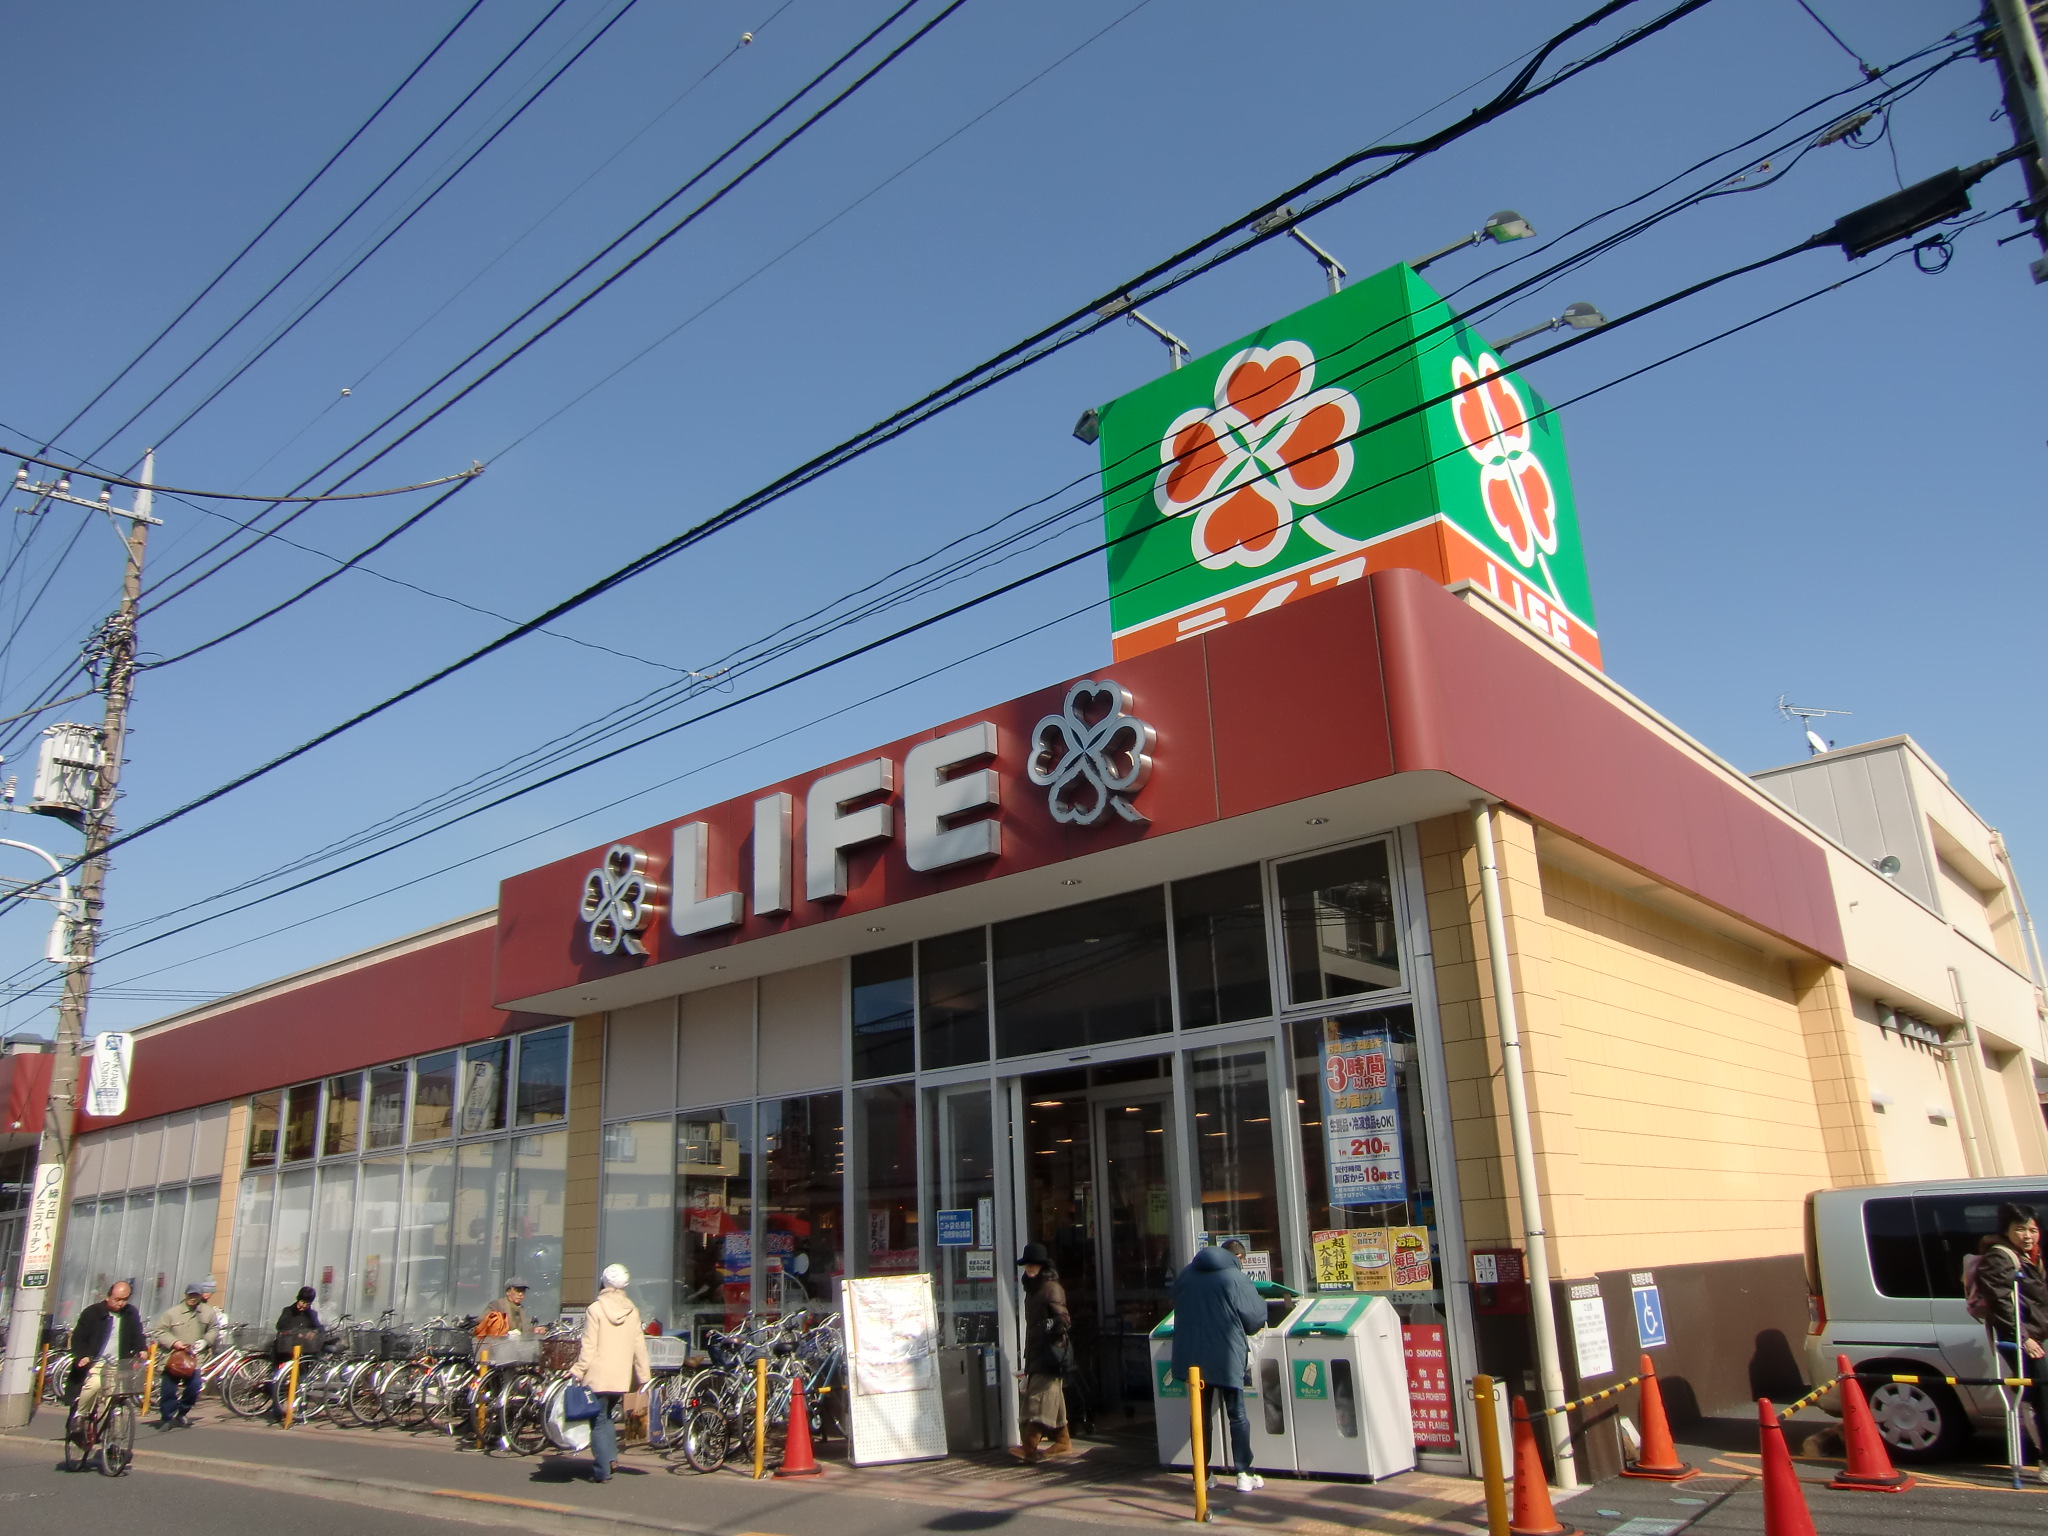 Supermarket. 579m up to life Chofu Sengawa store (Super)